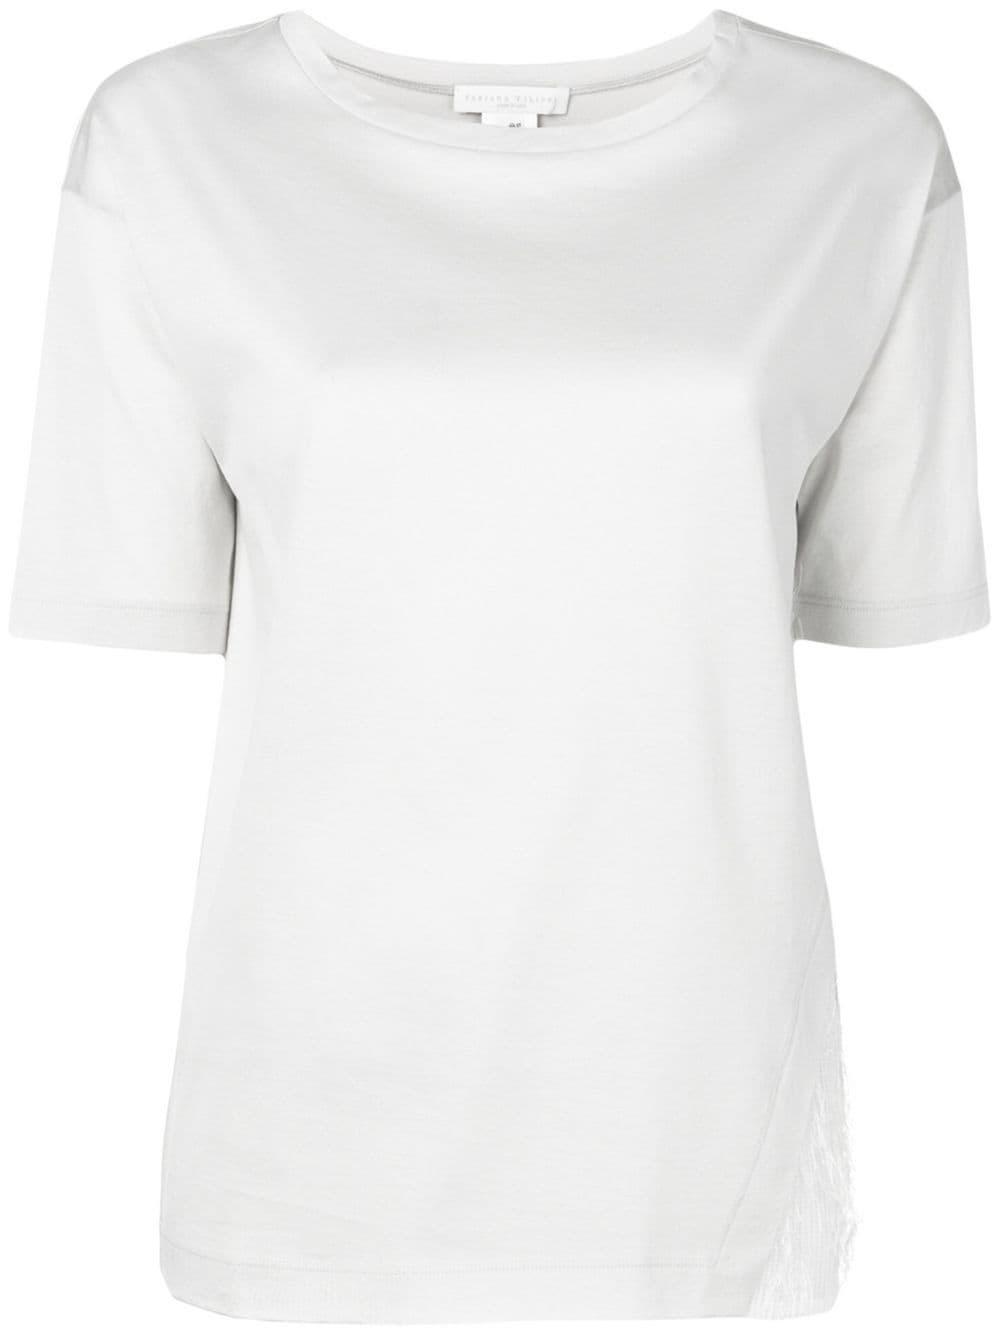 Fabiana Filippi Cotton Mesh Panel T-shirt in Grey (Gray) - Lyst